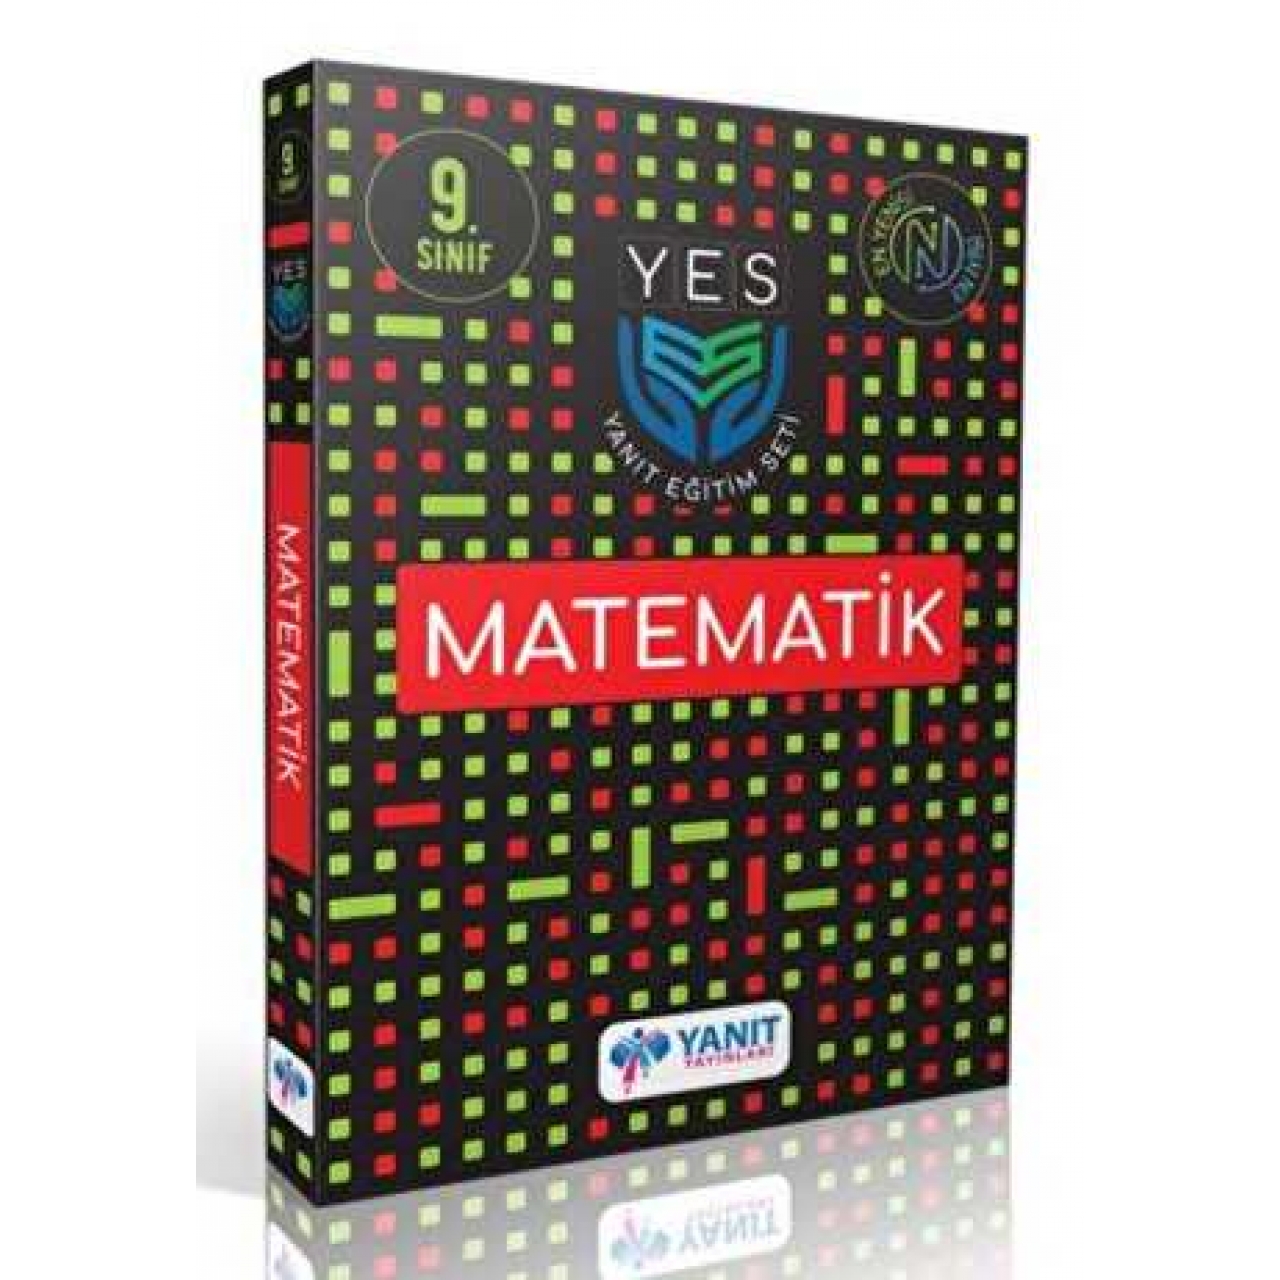 9. Sınıf Yes Serisi Matematik Yanıt Yayınları